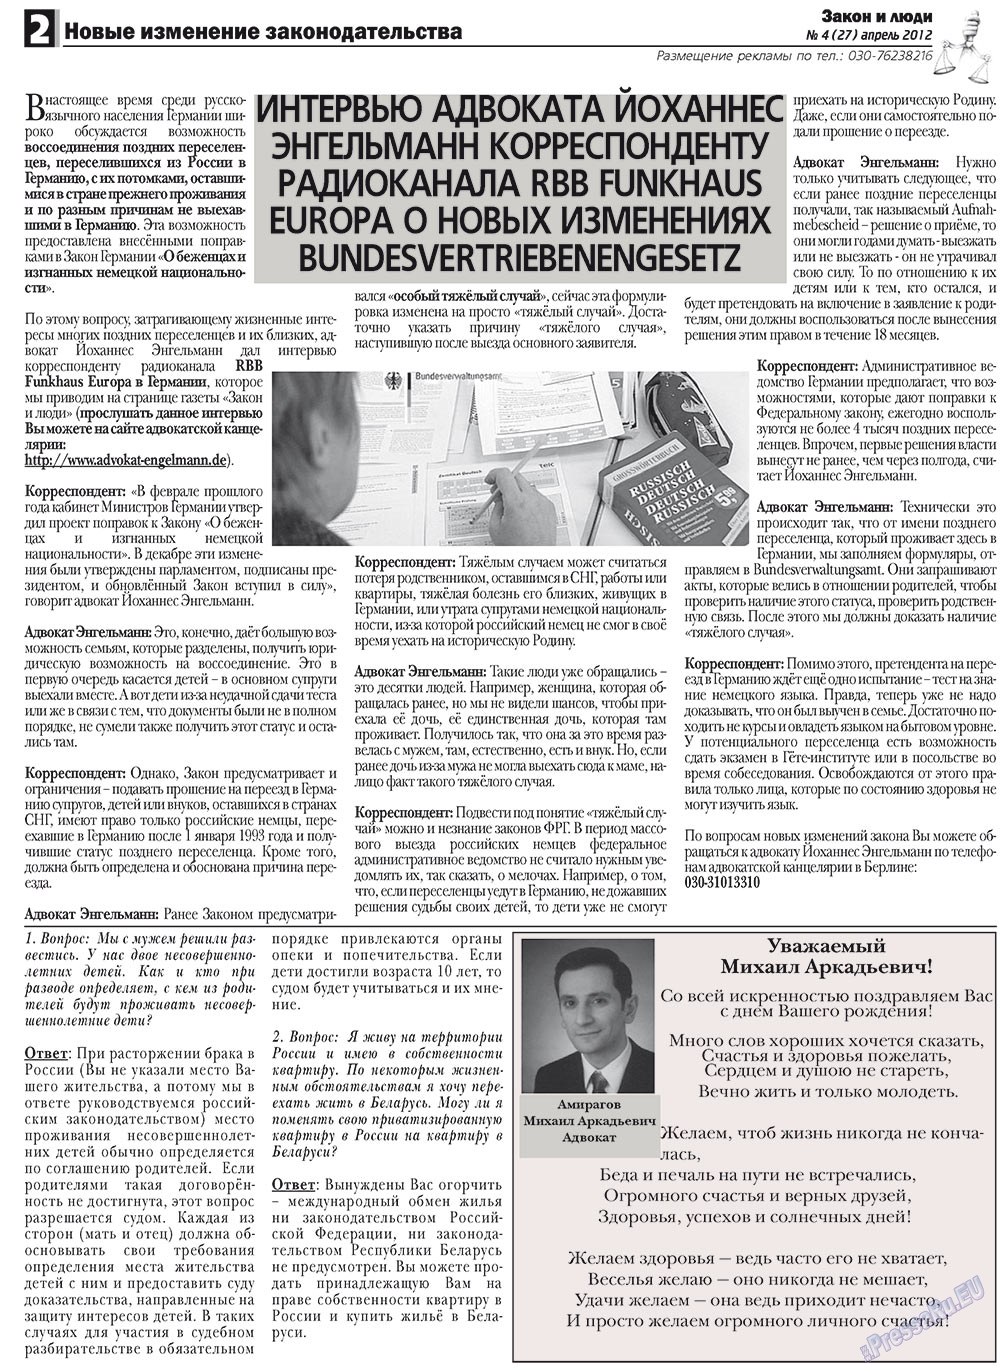 Закон и люди, газета. 2012 №4 стр.2